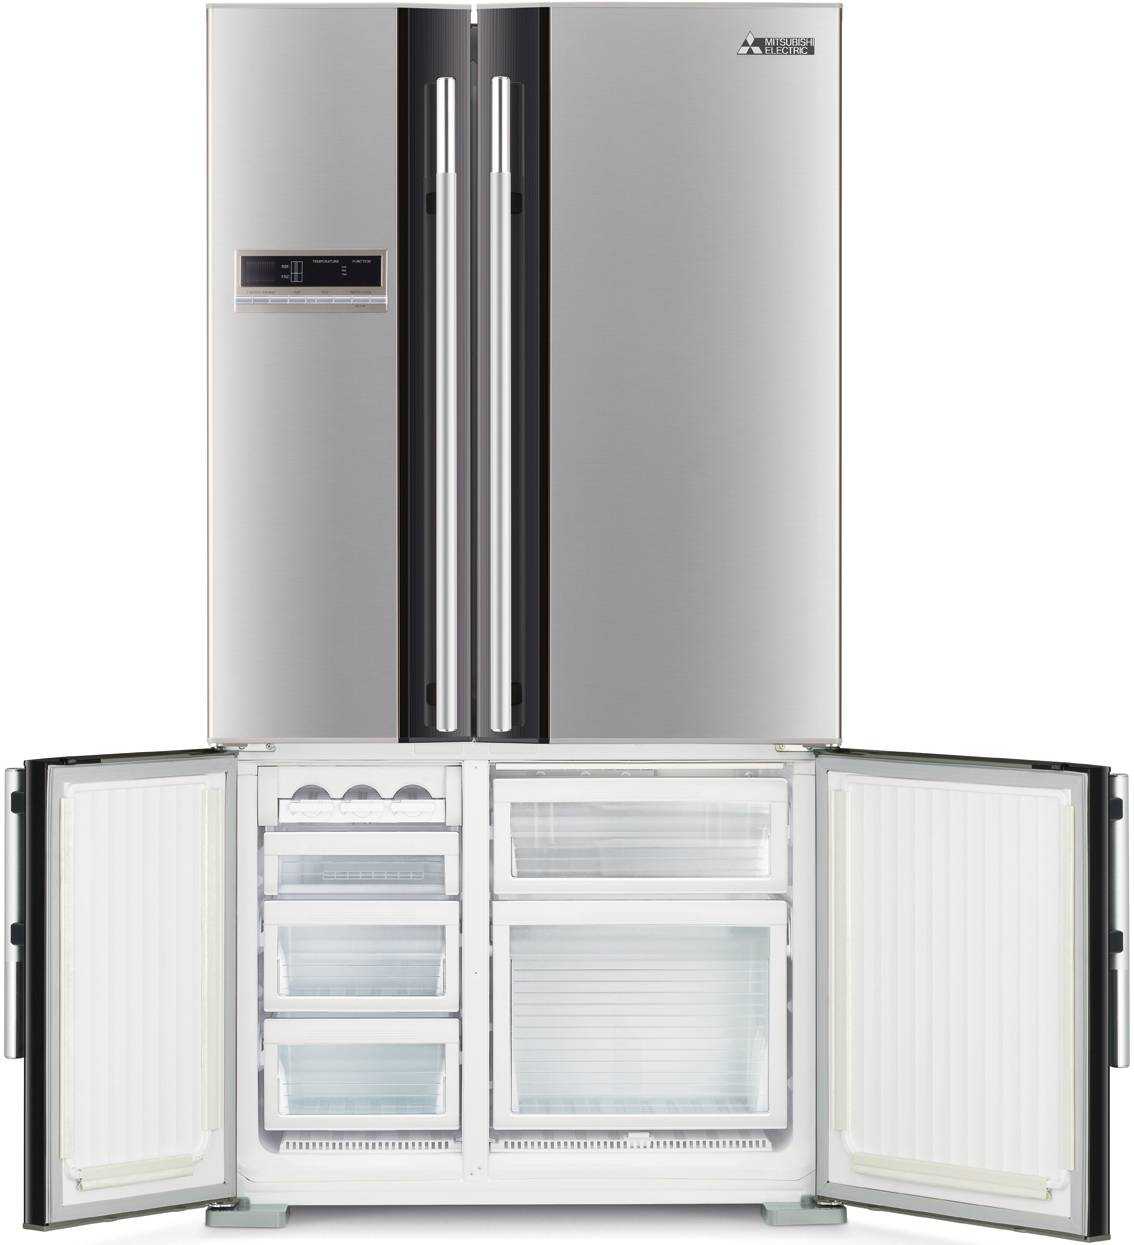 Советы по выбору лучших моделей холодильников с двумя морозилками